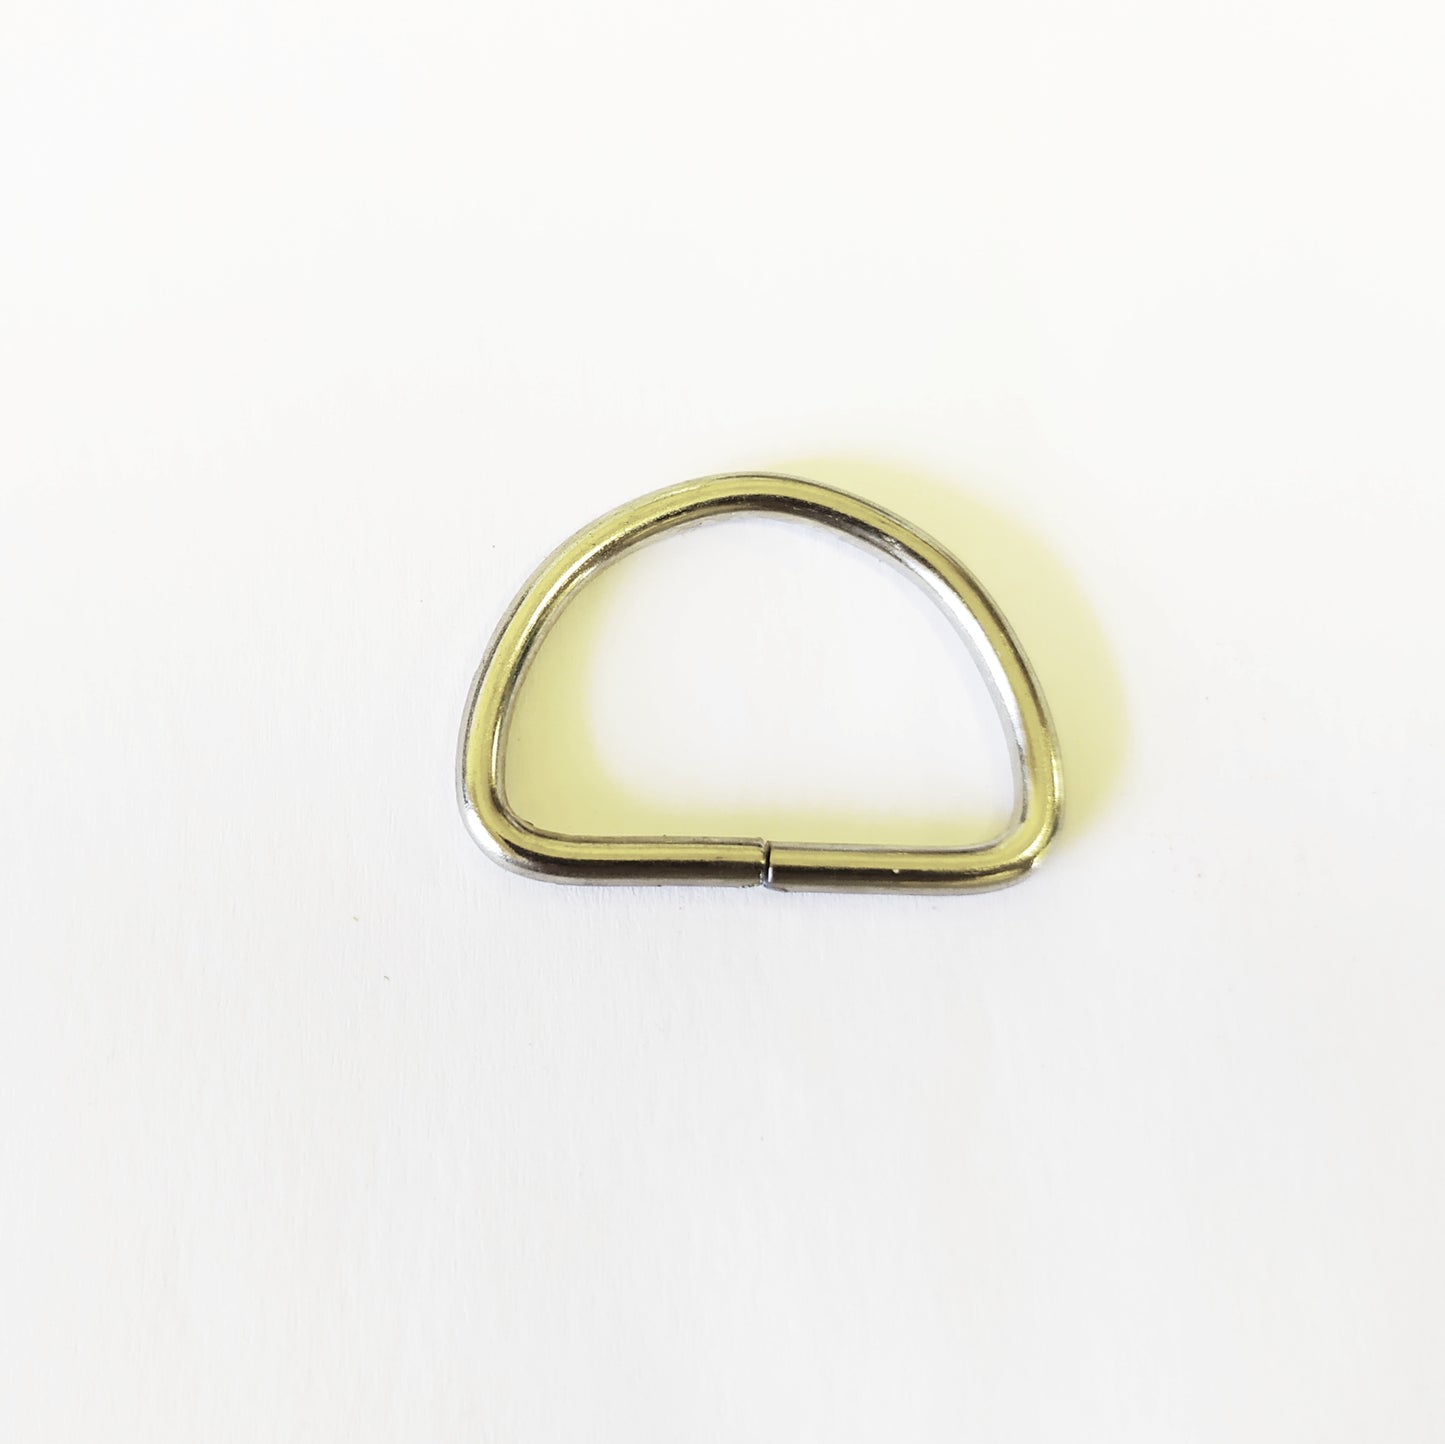 25mm D Ring - Nickel